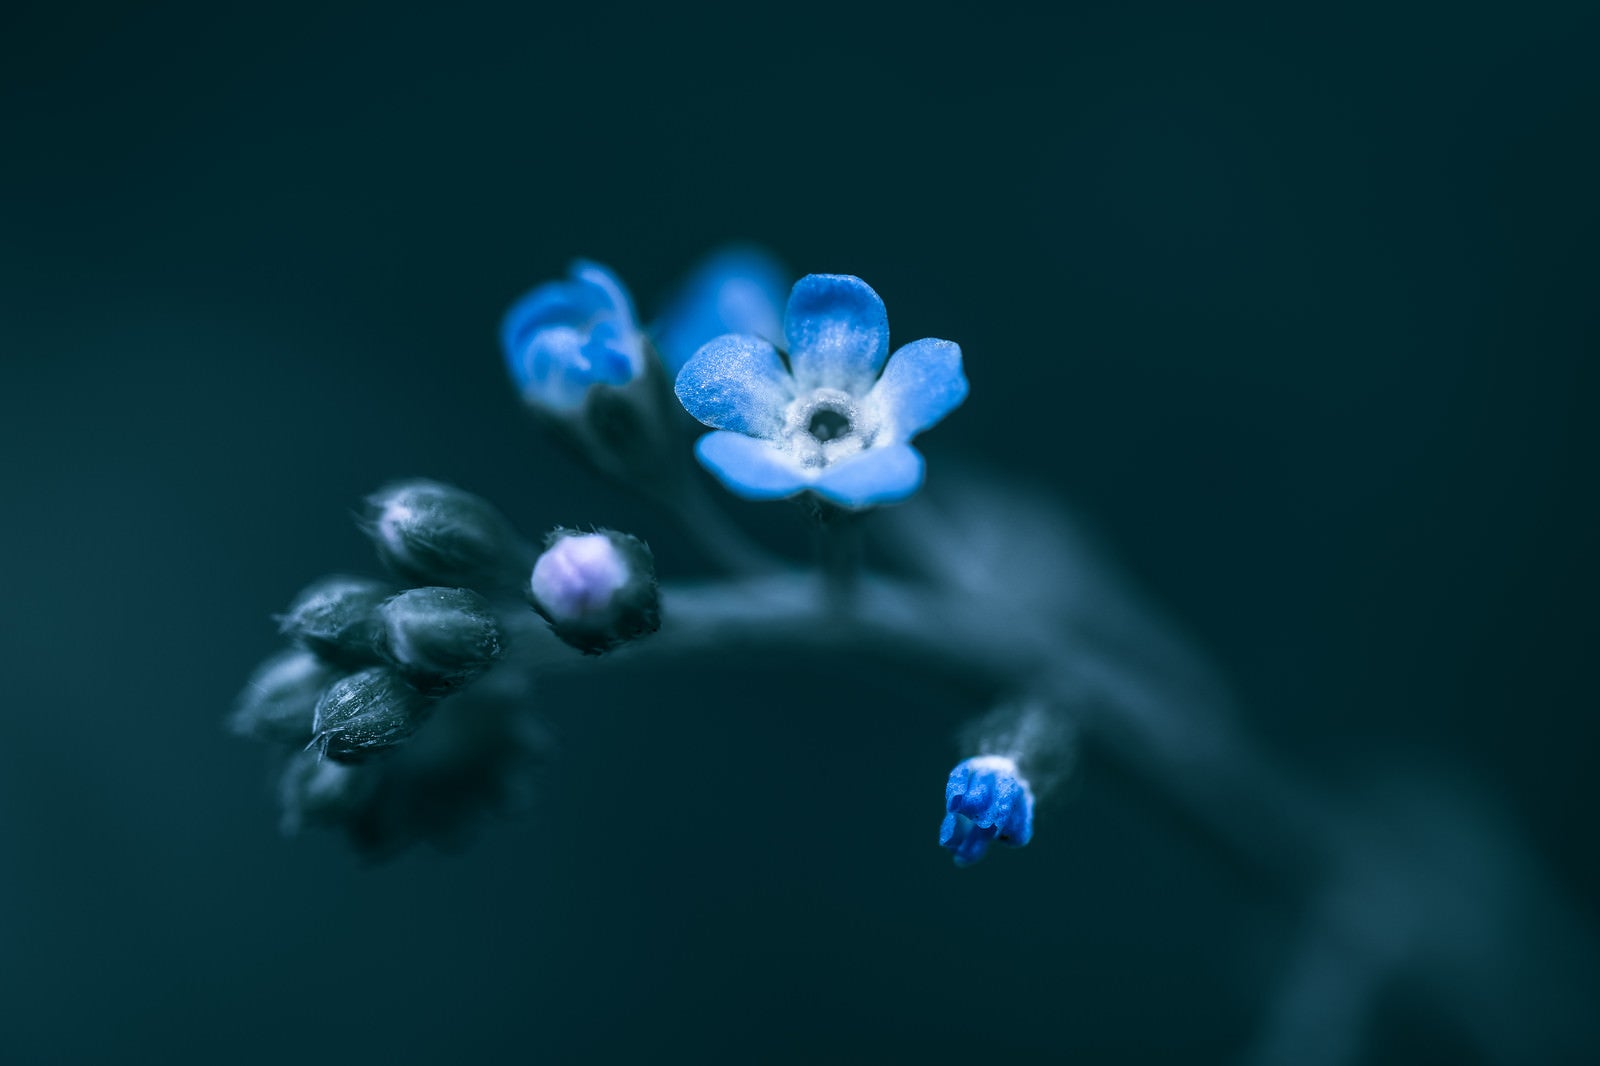 「蕾から花が咲く」の写真